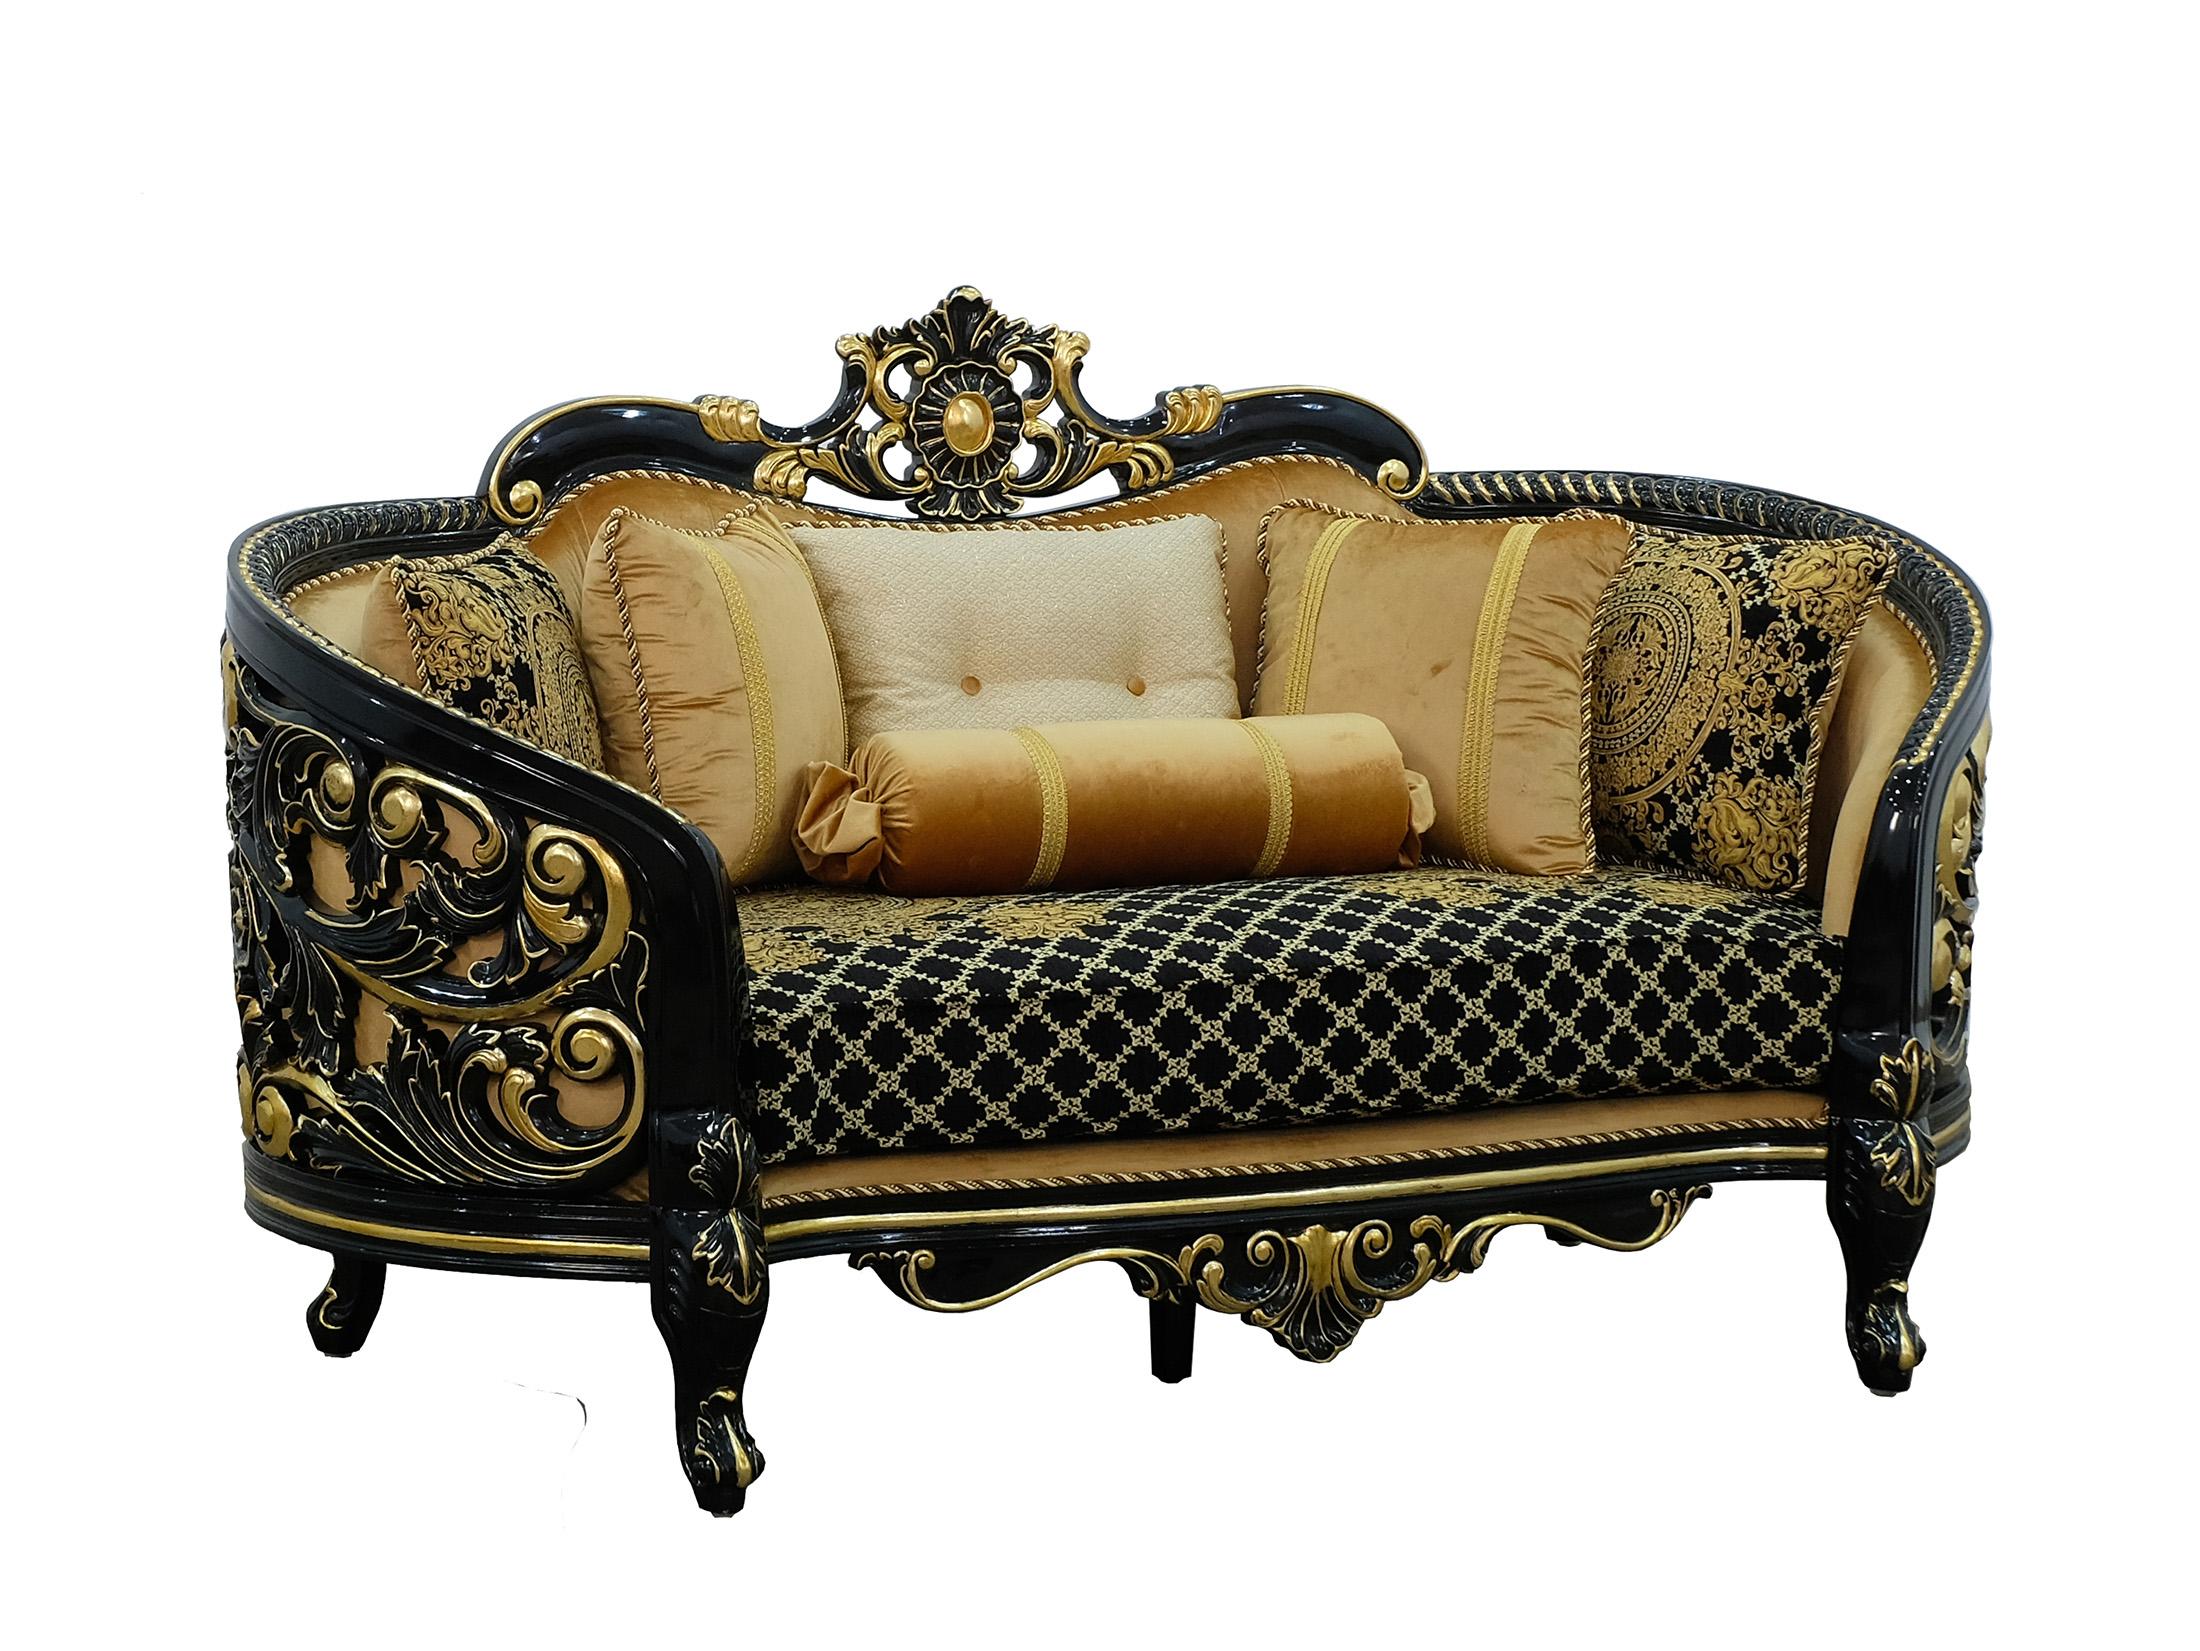 Classic, Traditional Loveseat BELLAGIO III 30019-L in Antique, Gold, Black Velvet